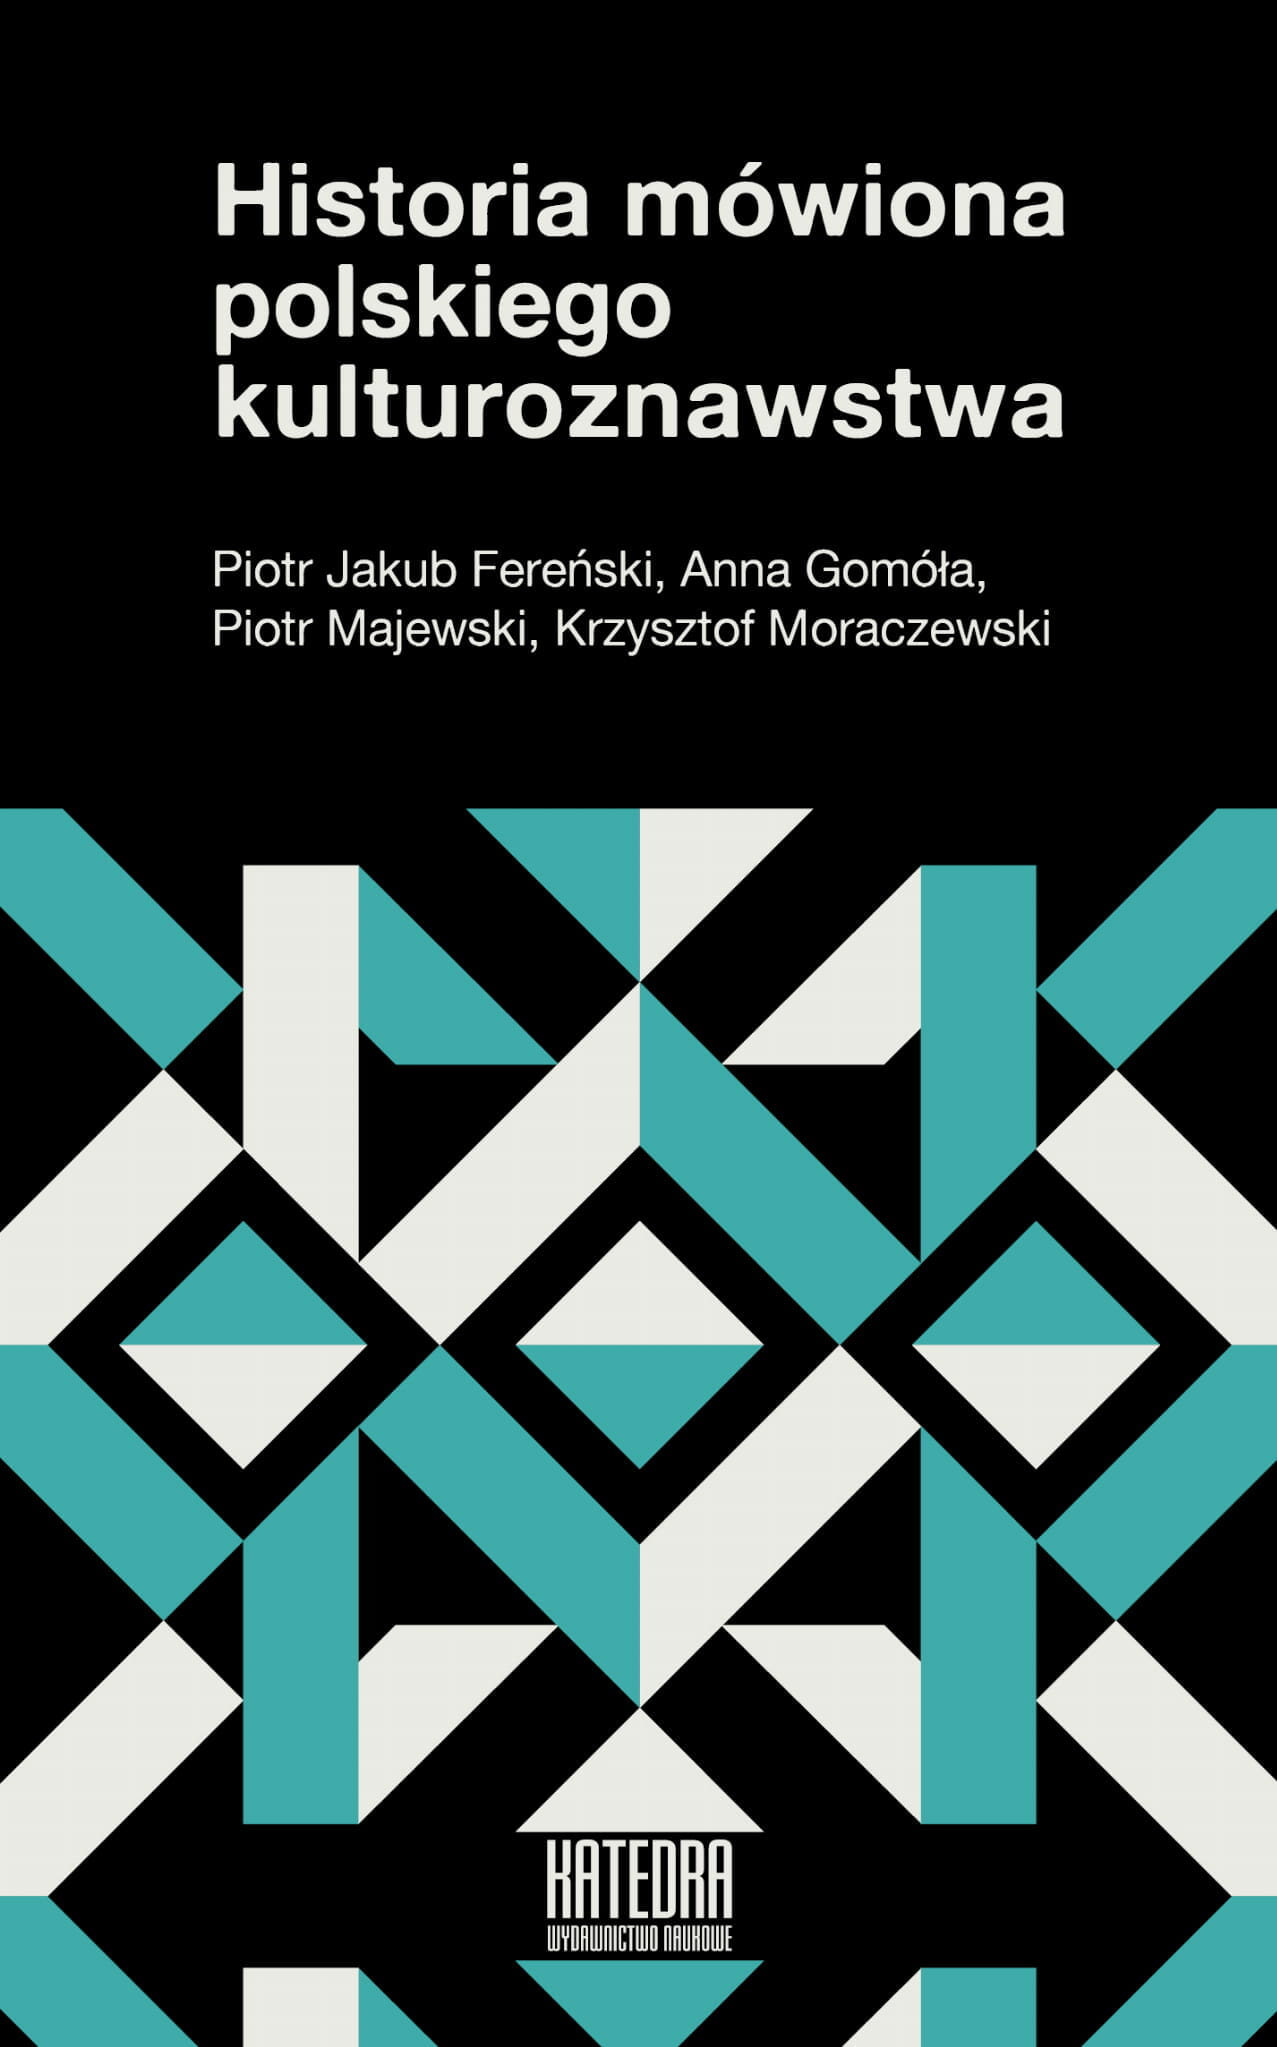 Historia mówiona polskiego kulturoznawstwa - Kulturoznawstwo UAM